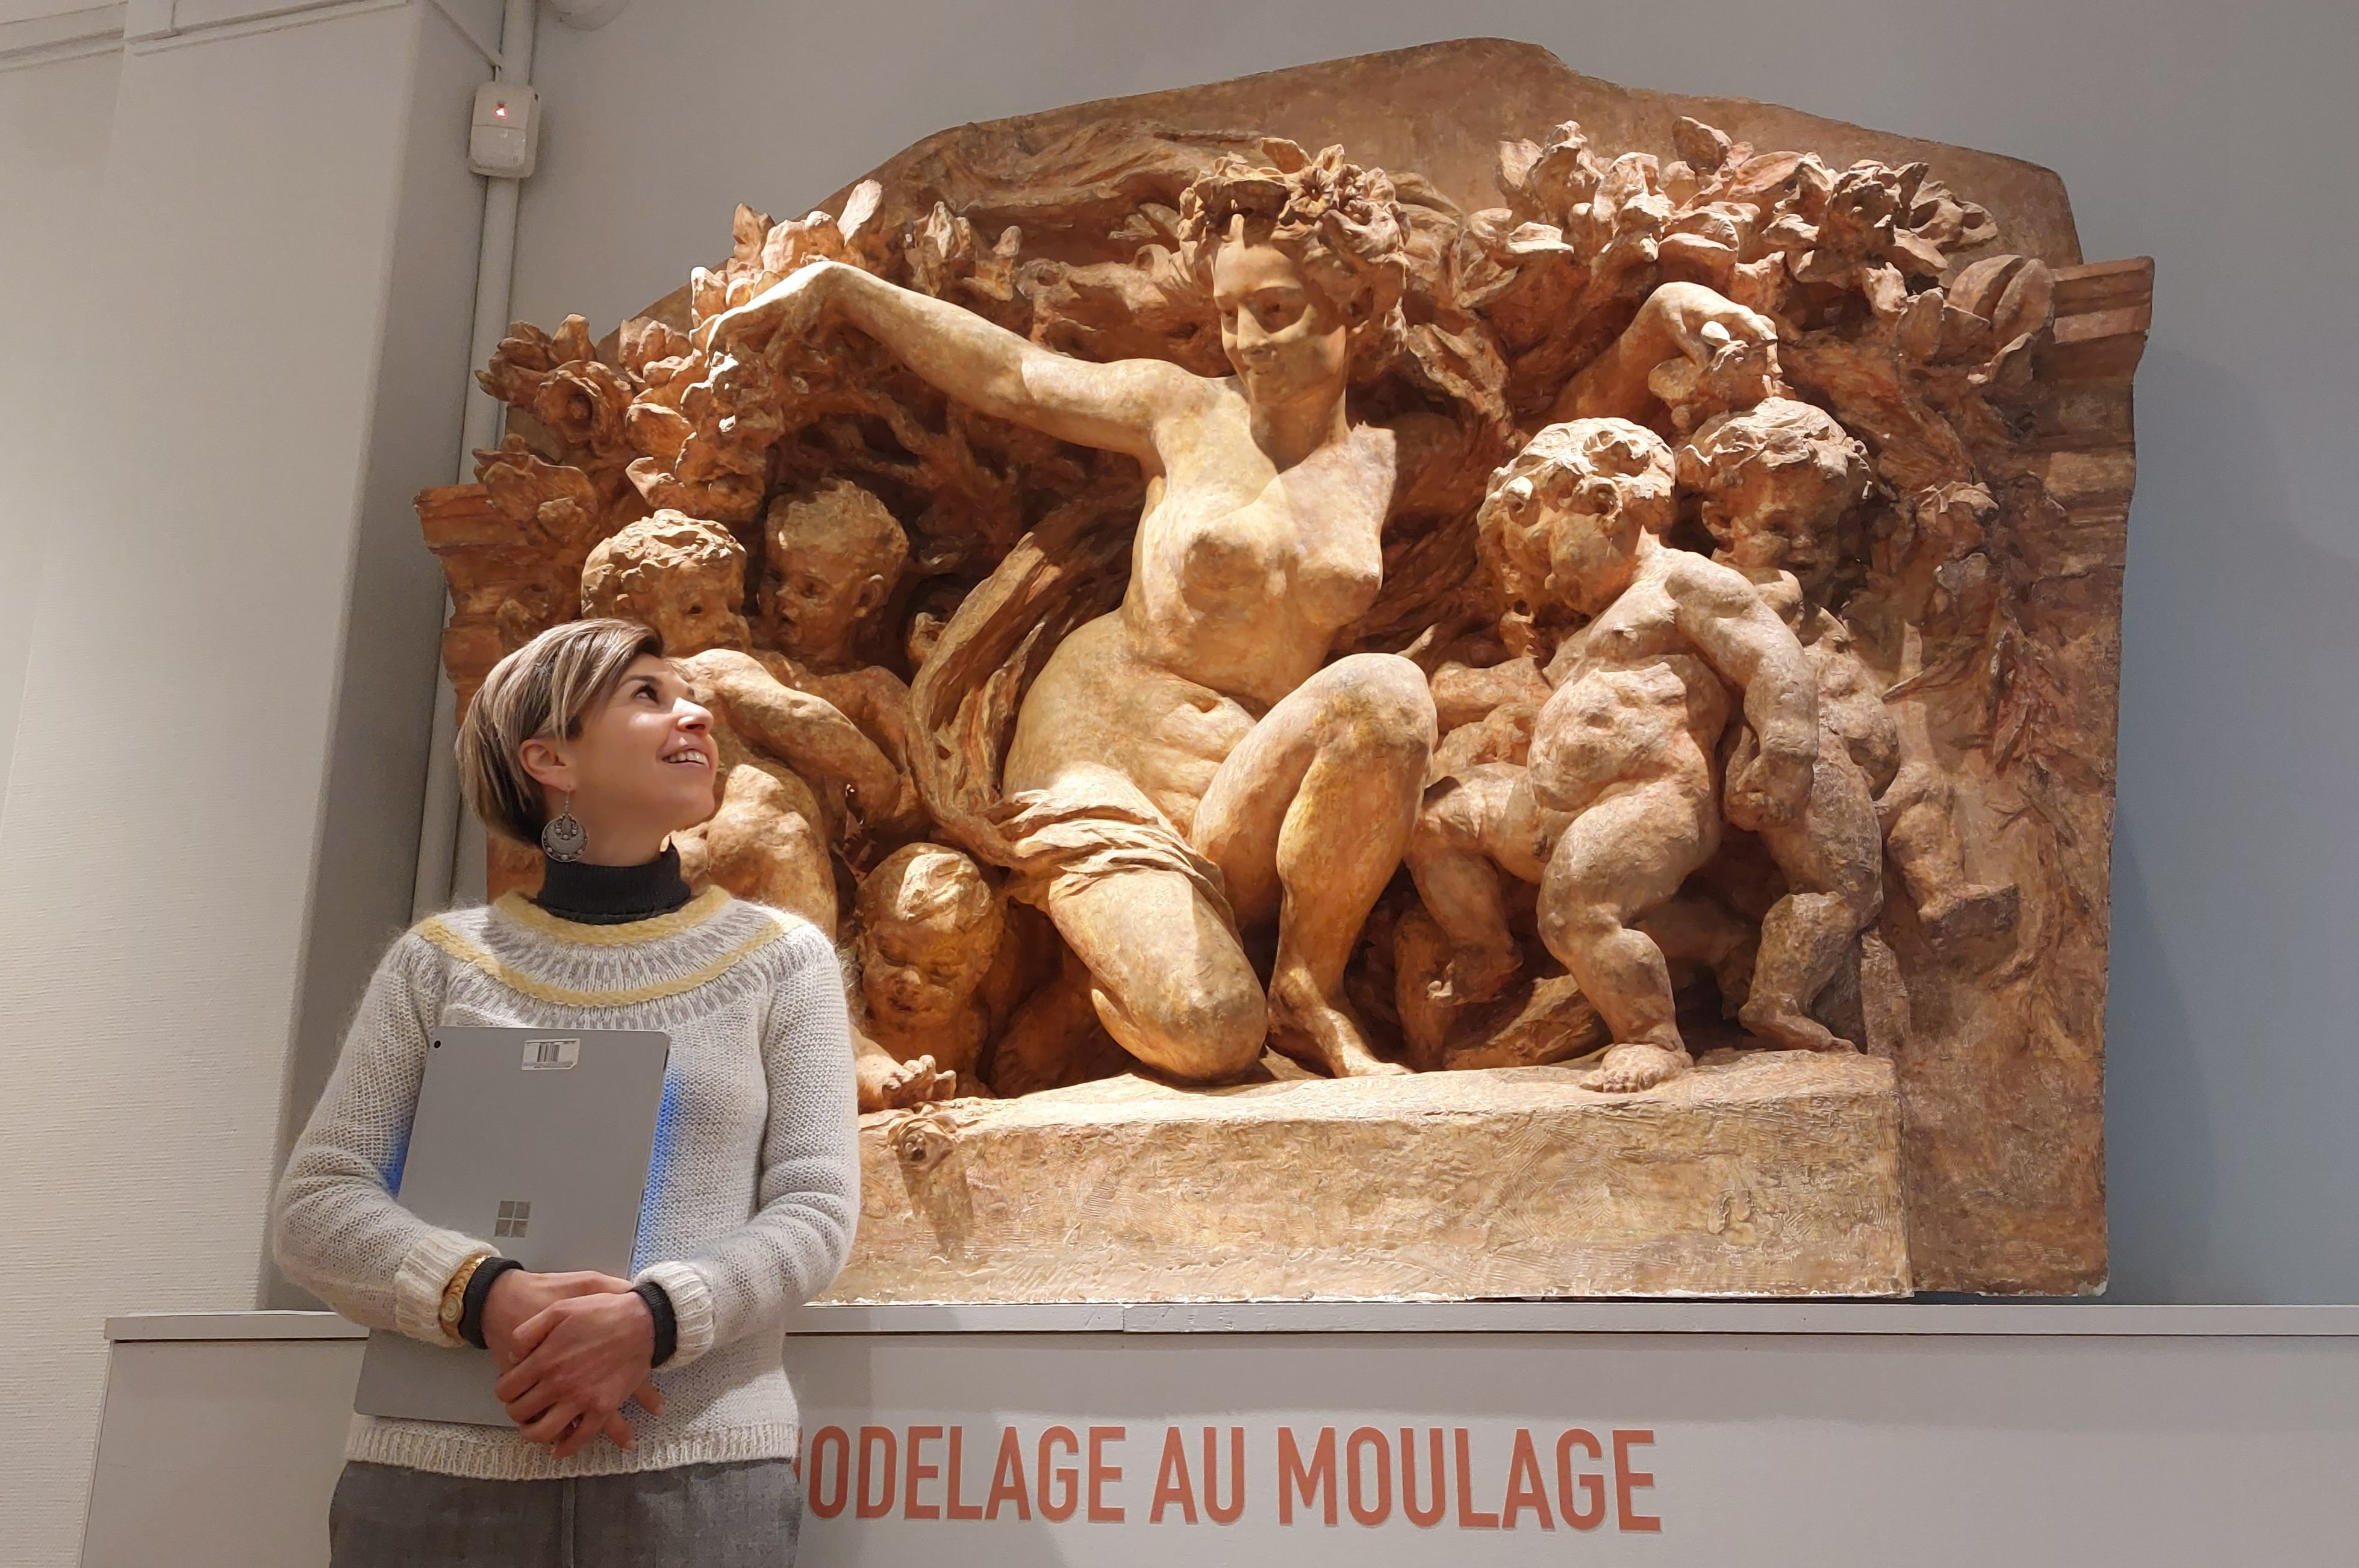 Courbevoie, le 1er mars 2023. Virginie Vignon, directrice du musée Roybet-Fould qui présente une exposition consacrée au sculpteur Jean-Baptiste Carpeaux. LP/A.-S.D.